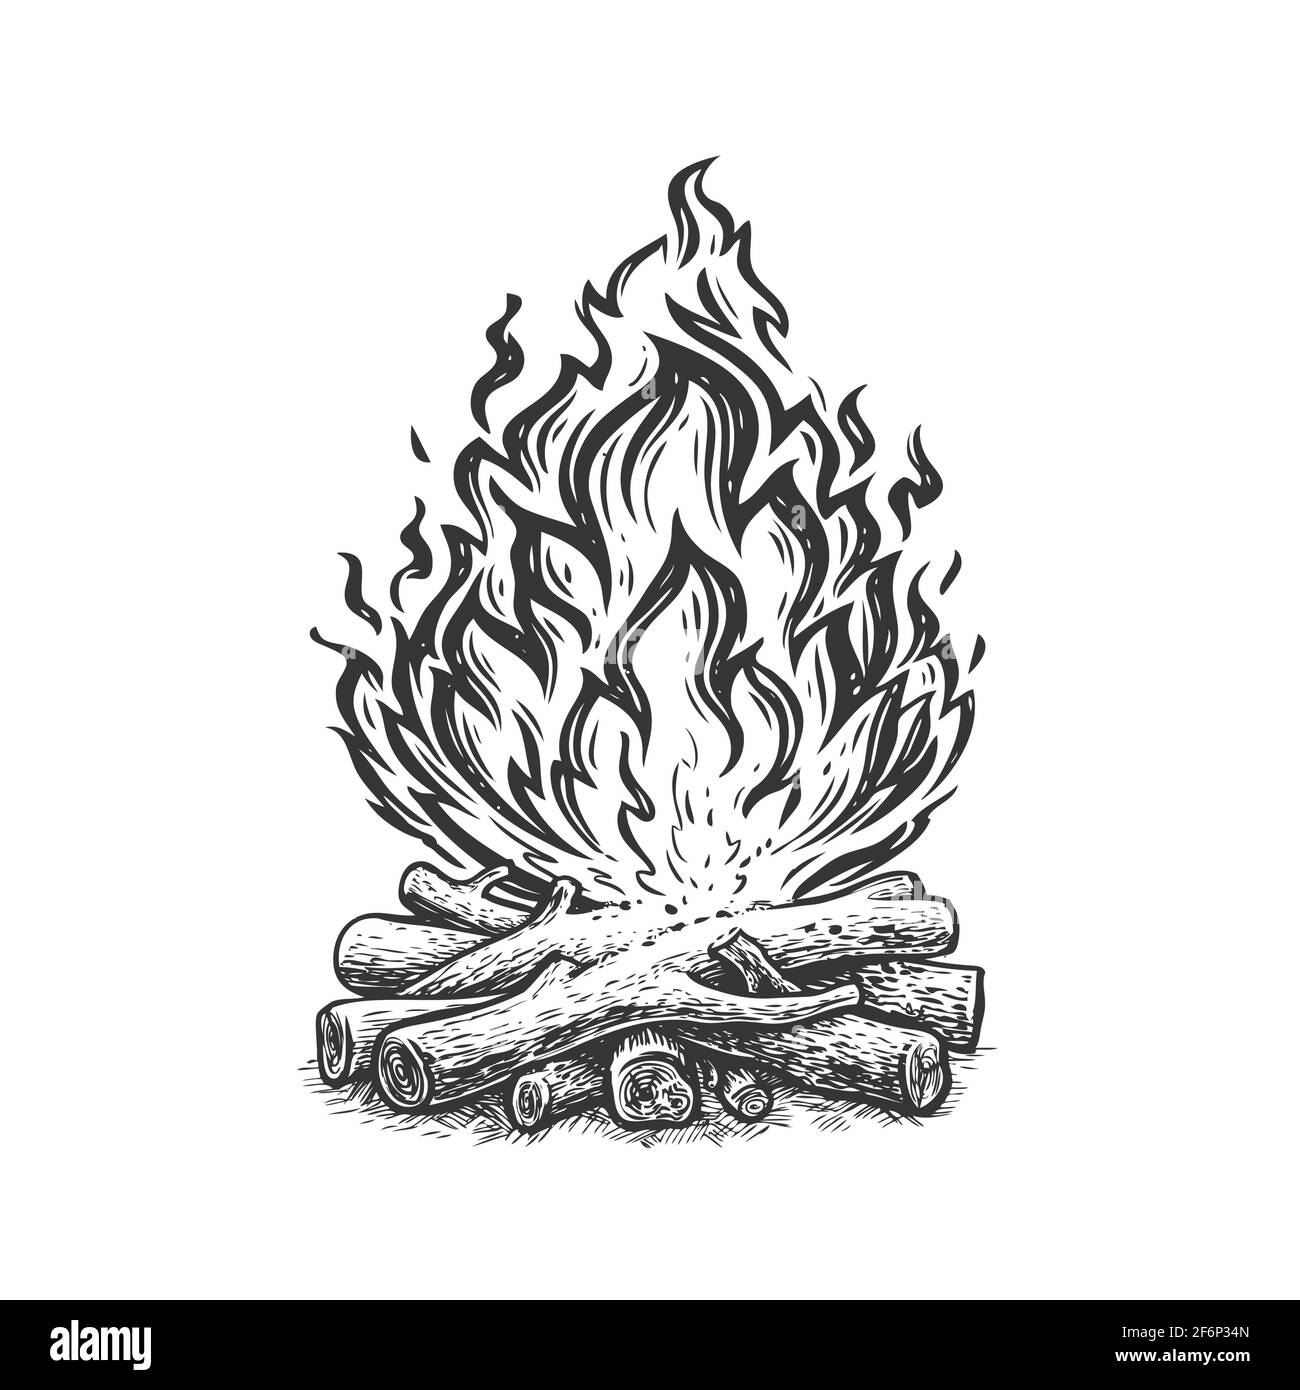 Croquis de feu de camp. Cheminée, flamme et bois de chauffage à la main dessiné illustration vectorielle vintage Illustration de Vecteur